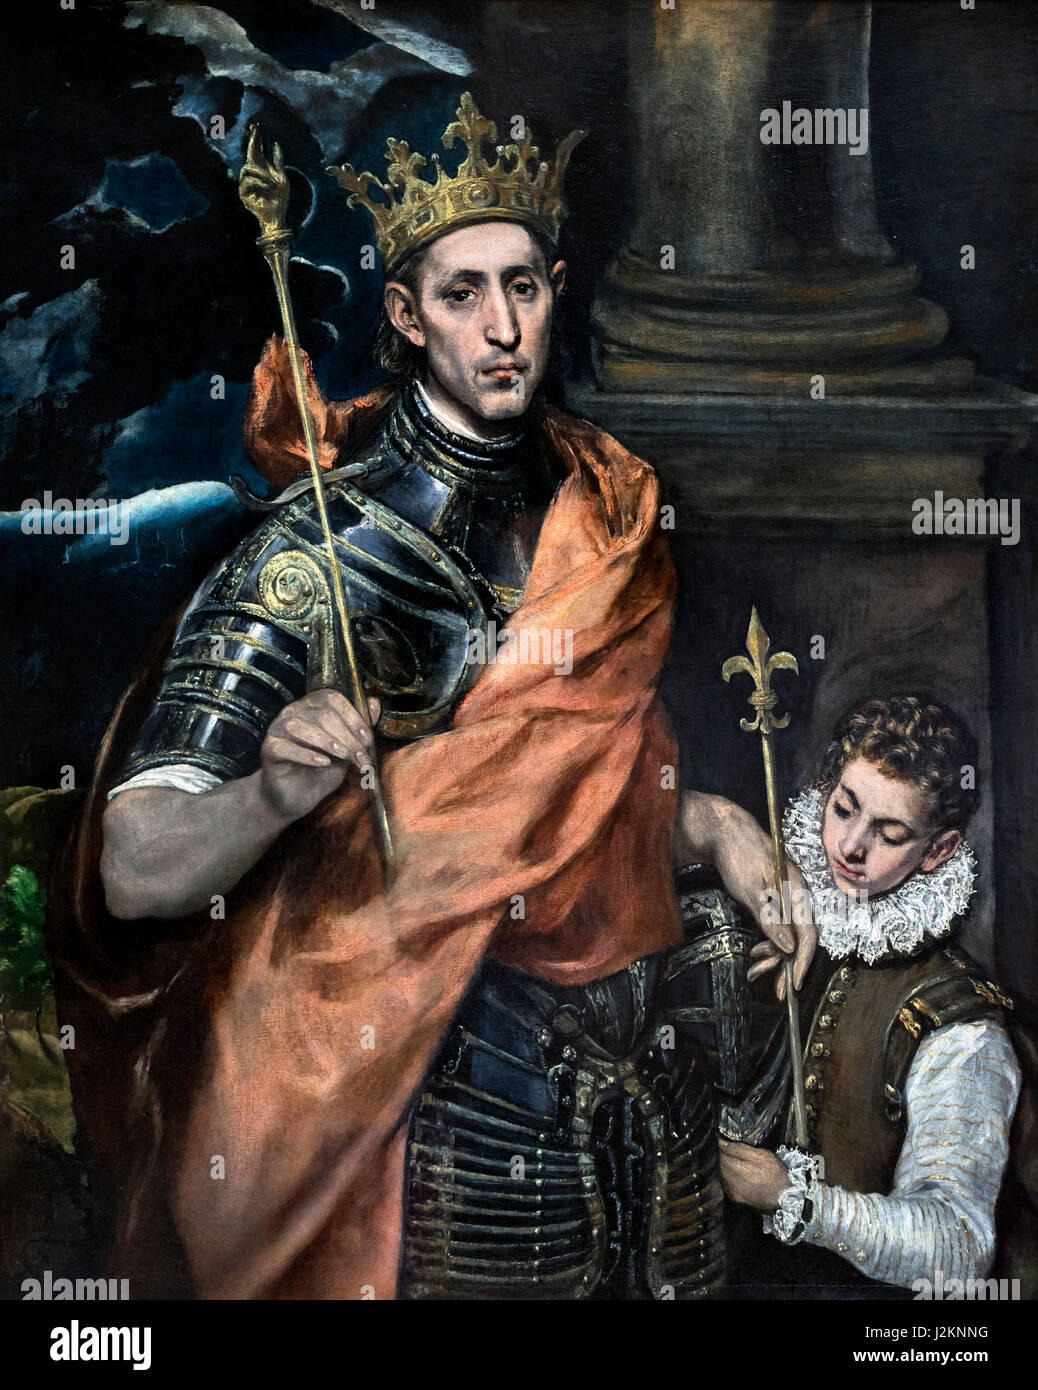 'St Louis, Rey de Francia, y una página' de El Greco (Doménikos Theotokópoulos, 1541-1614), óleo sobre lienzo, c.1585-90. Retrato del Rey cartas IX de Francia (1214-1270), comúnmente conocido como Saint Louis, que reinó de 1226 a 1270. Foto de stock